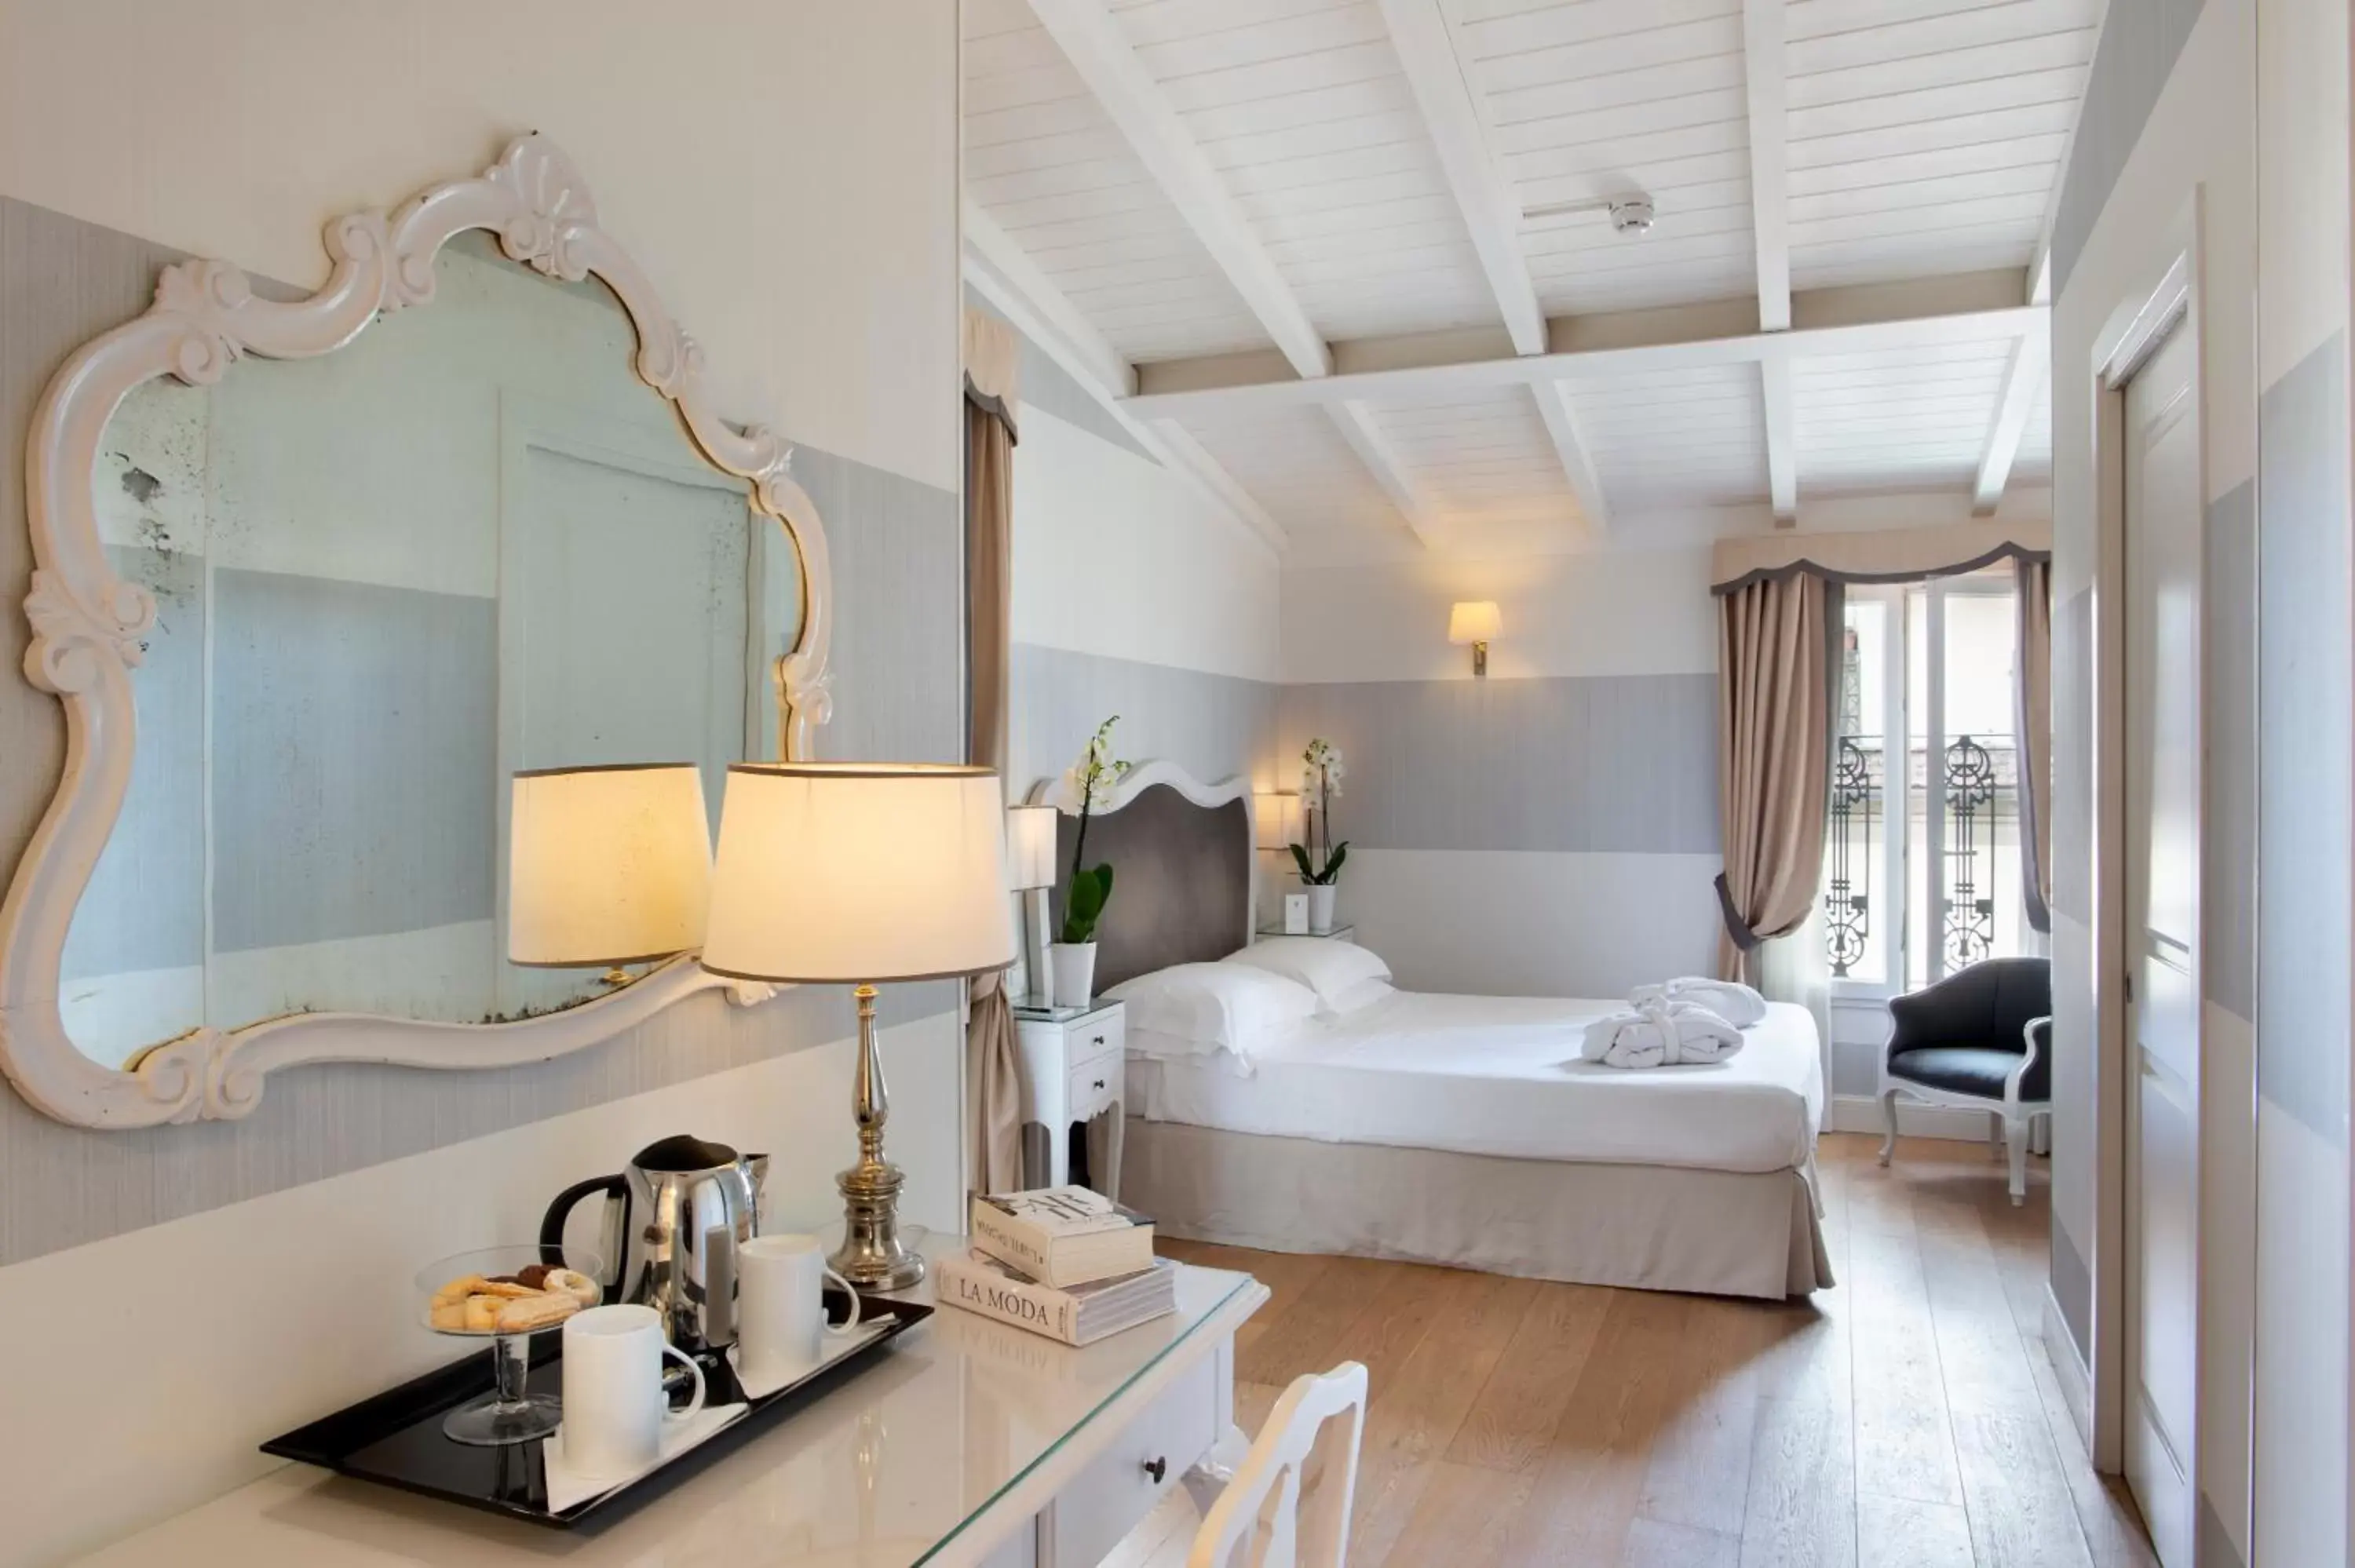 Bedroom in Hotel Rapallo